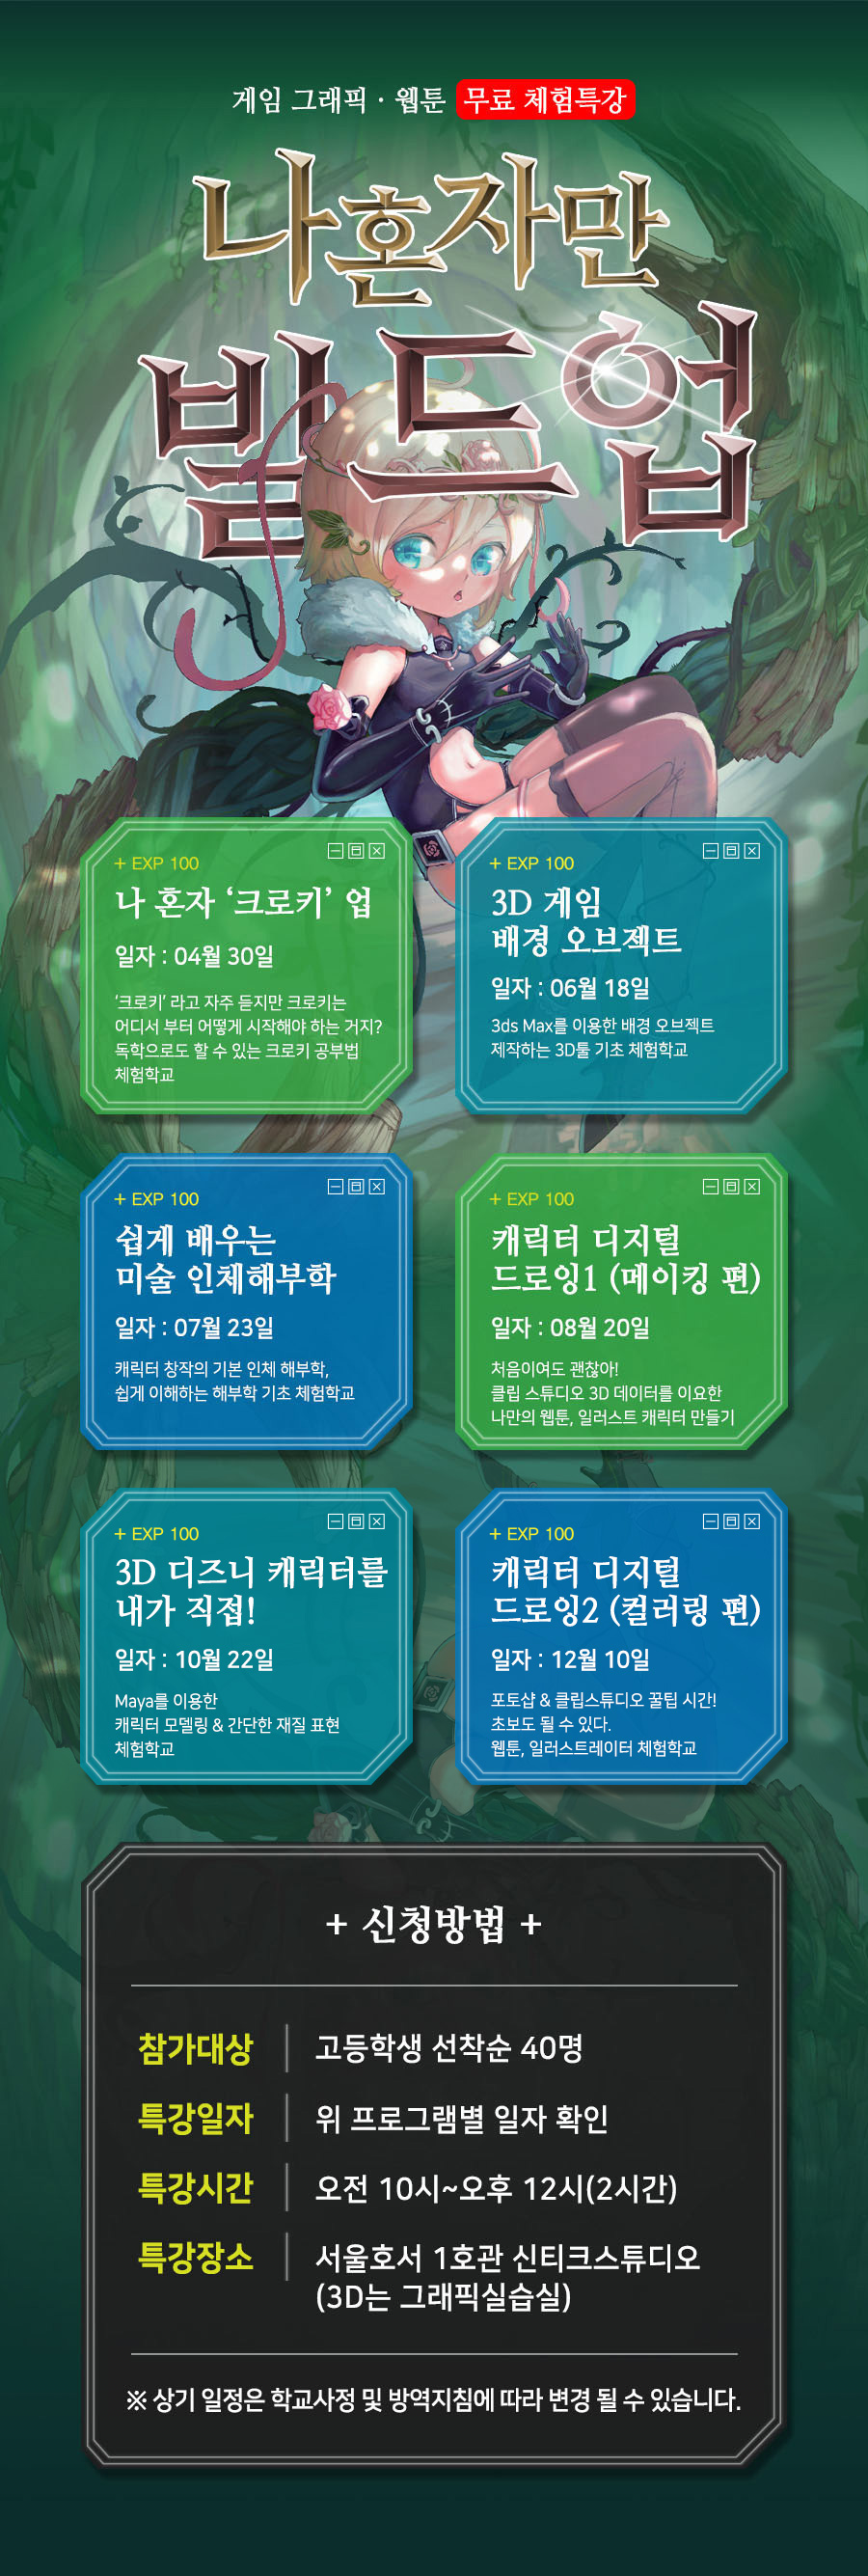 게임 그래픽ㆍ웹툰 무료 체험특강 나혼자만 빌드업